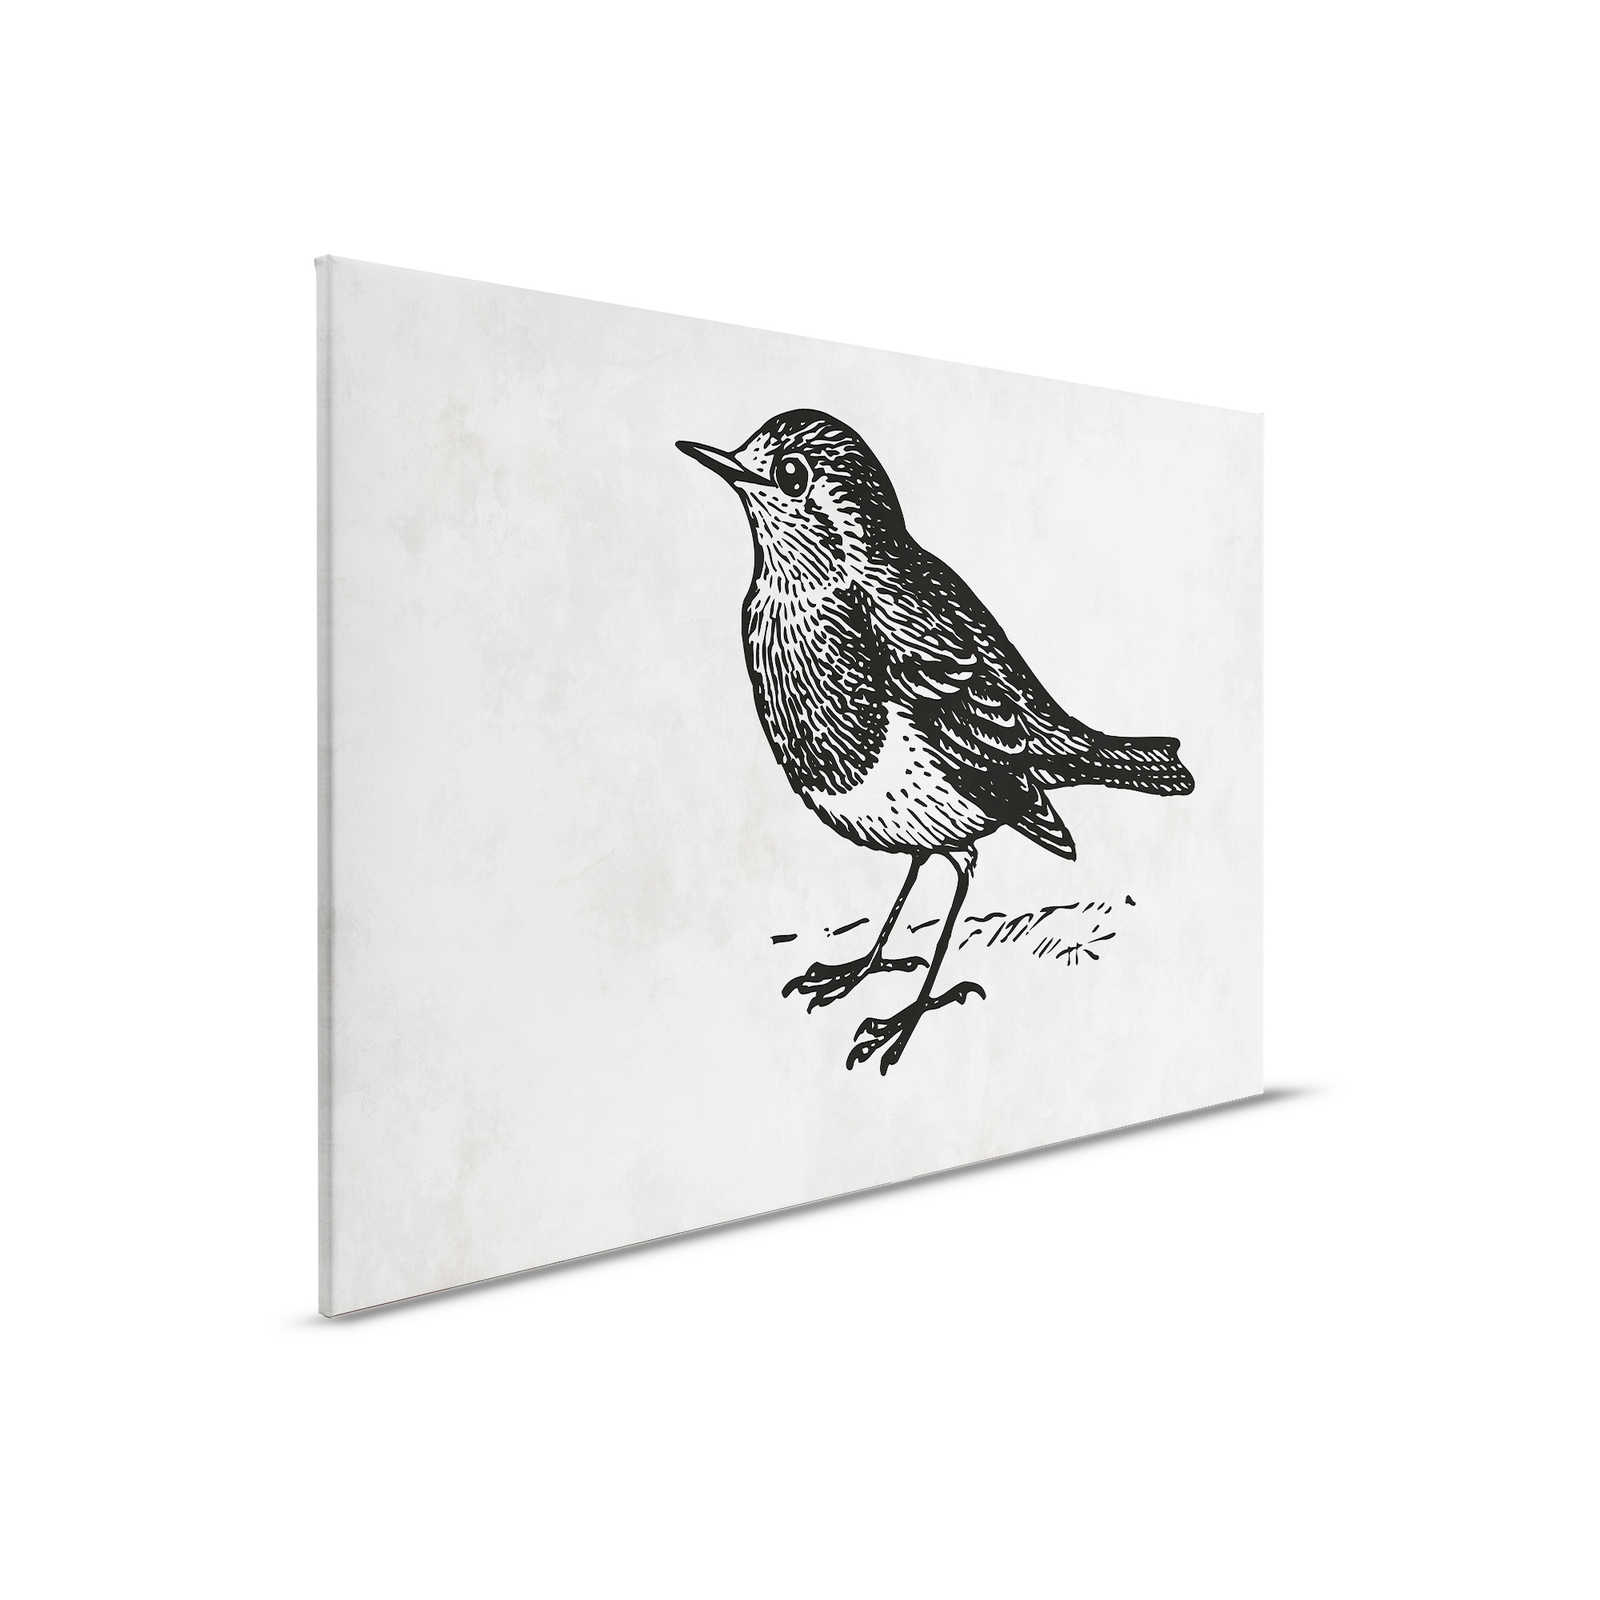 Quadro su tela in bianco e nero con uccello - 0,90 m x 0,60 m
